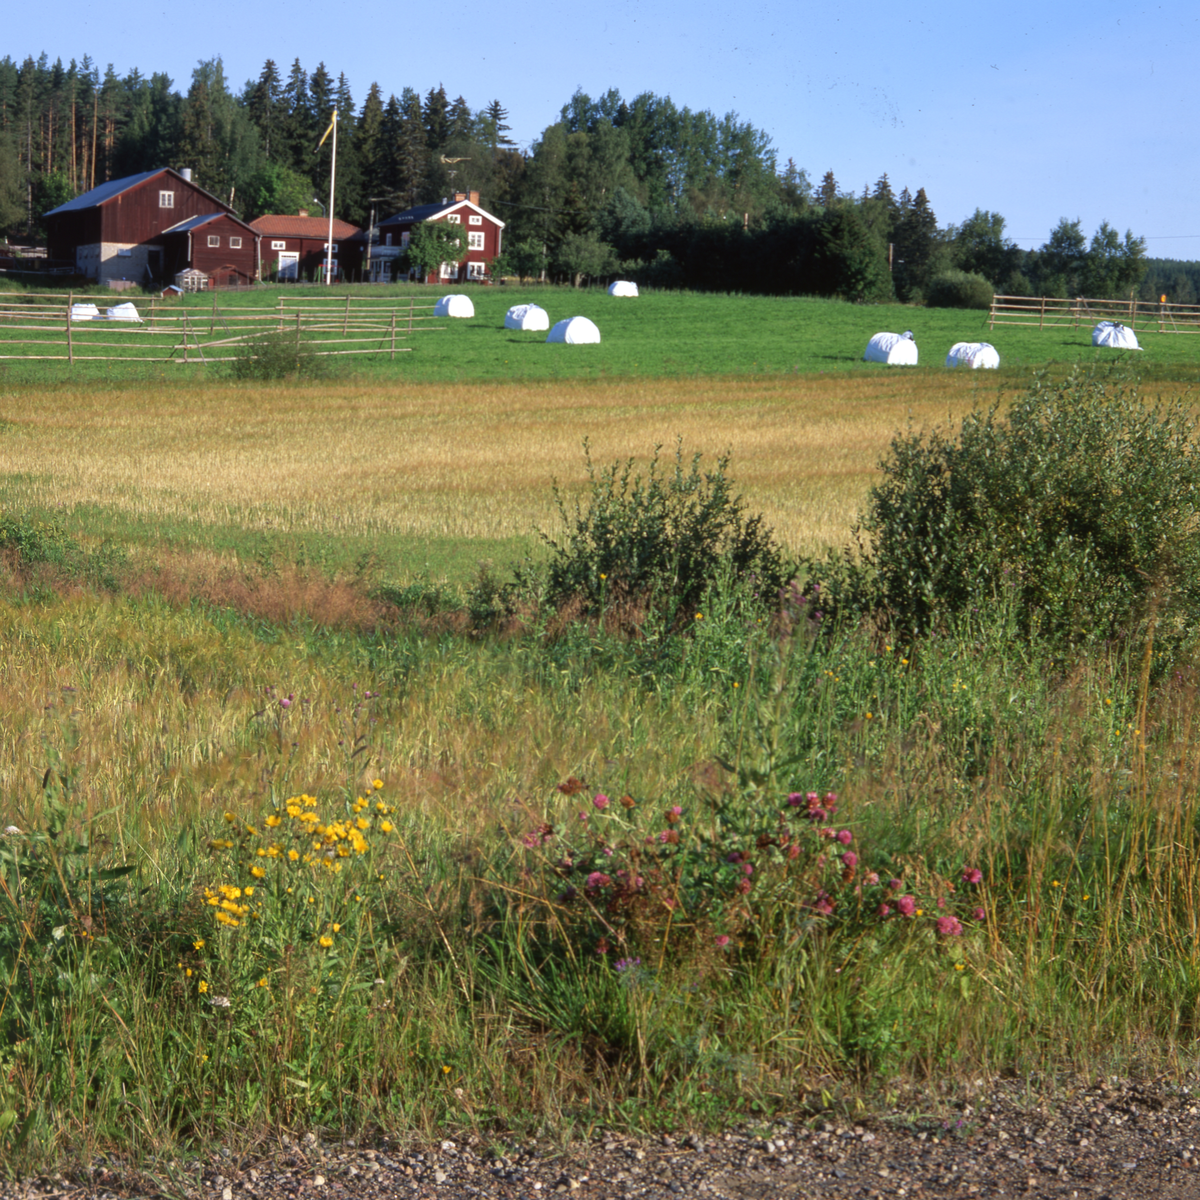 Inplastade ensilagebalar på åkermarken framför en gård med flera byggnader.